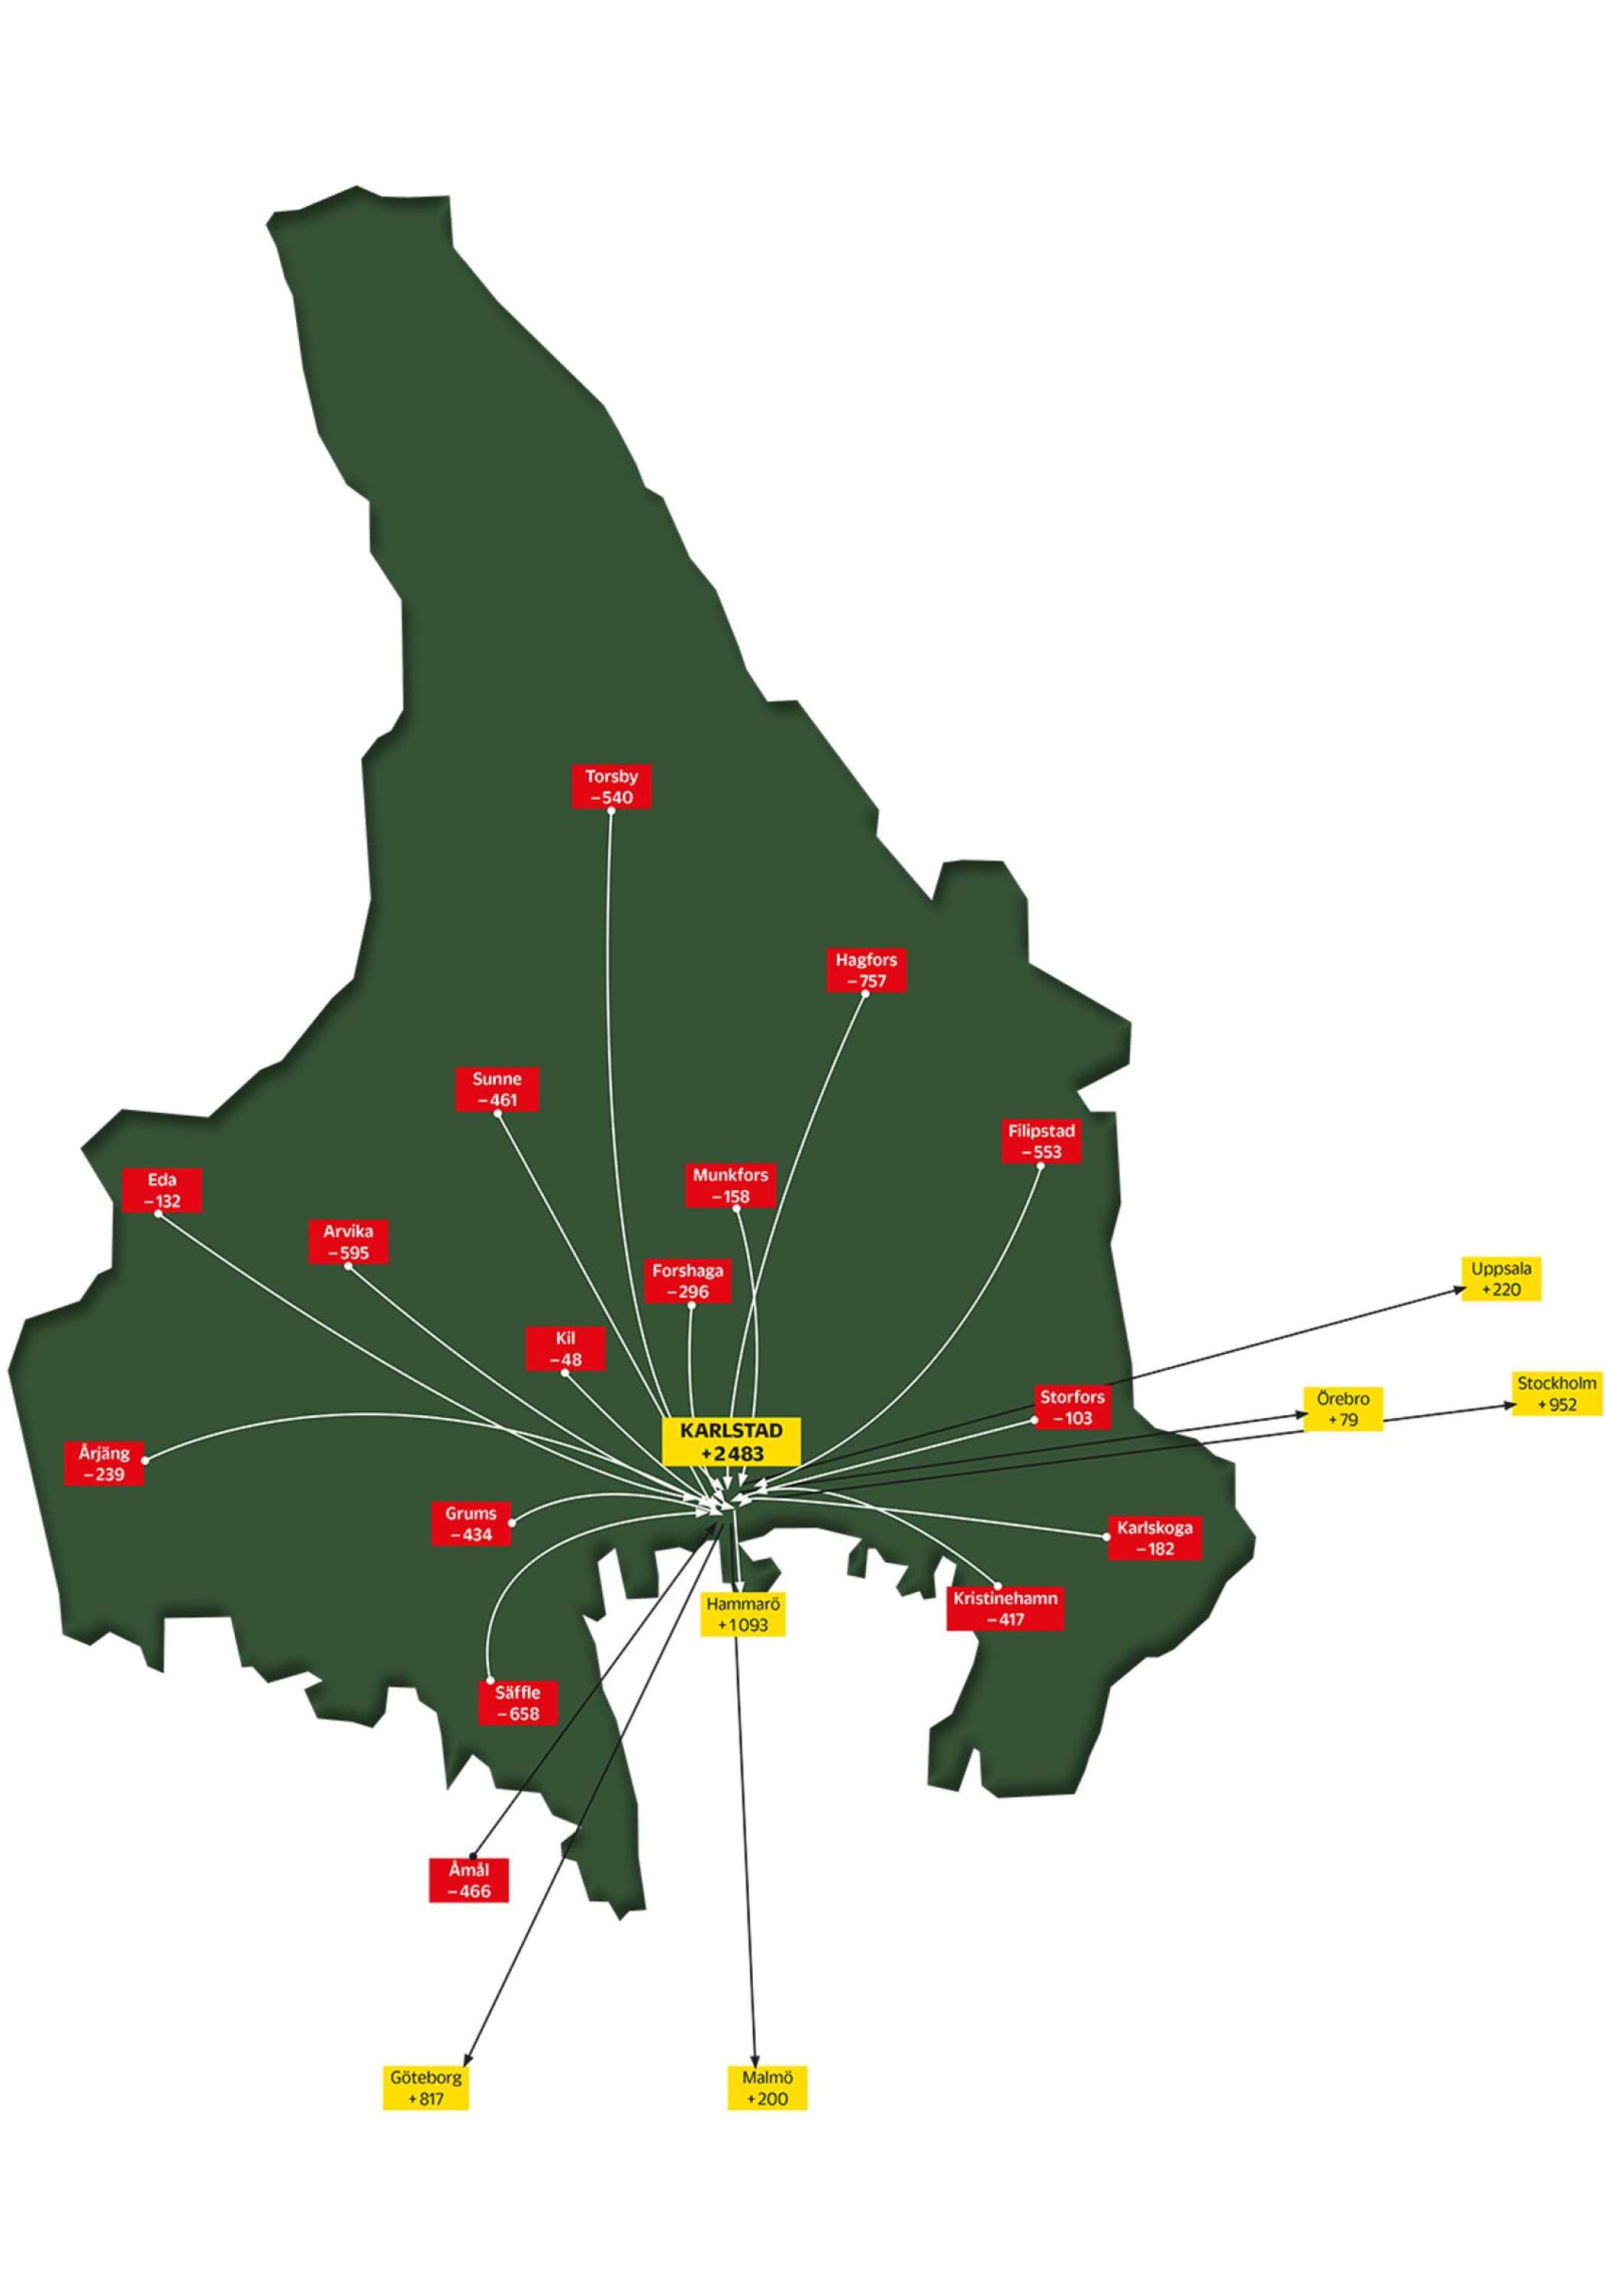 Kartan visar flyttningsmönstren till och från Karlstads kommun under perioden 2010-2020. I kommuner med röda siffror har fler personer flyttat till Karlstad än åt andra hållet. I kommuner med gula siffror är situationen tvärt om, fler Karlstadsbor har flyttat till dem än jämfört med hur många som har bosatt i Karlstads kommun från dessa platser.Totalt har 4 202 fler länsbor bosatt i Karlstads kommun under perioden jämfört med hur många Karlstadsbor som har flyttat åt andra hållet. Samtidigt har 1 719 fler invånare i Karlstads kommun flyttat till bland annat storstäderna än som har bosatt sig i Karlstad. Det skapar ett sammanlagt flyttningsöverskott för Karlstads kommun på 2 483 personer.